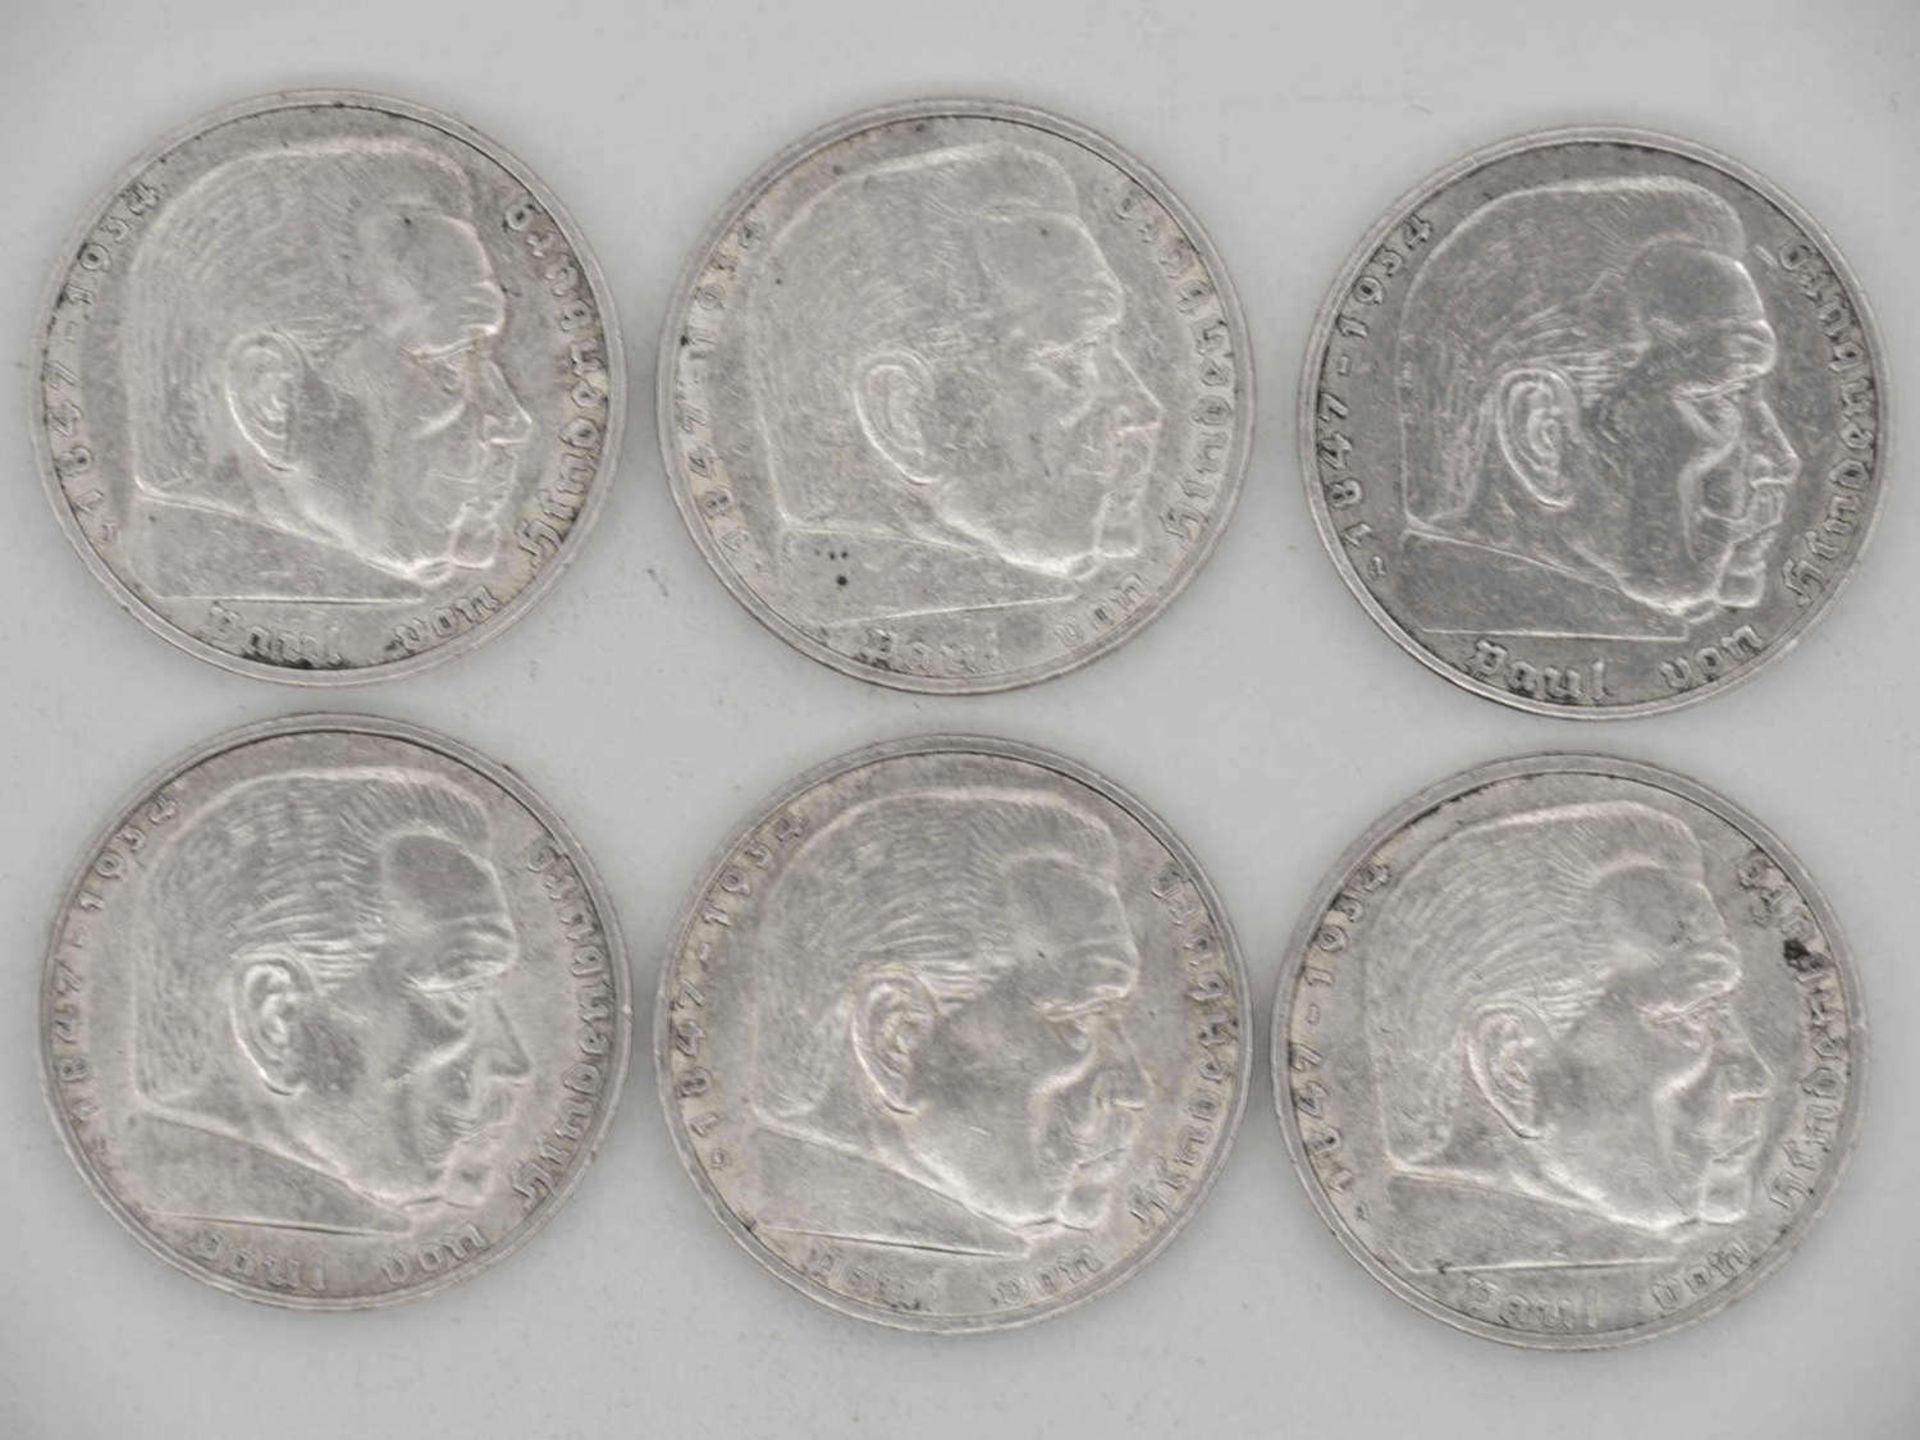 Deutschland 1936 A, D, J, Lot 5.- Reichsmark - Silbermünzen "Hindenburg". Qualität: ss. - Bild 2 aus 2